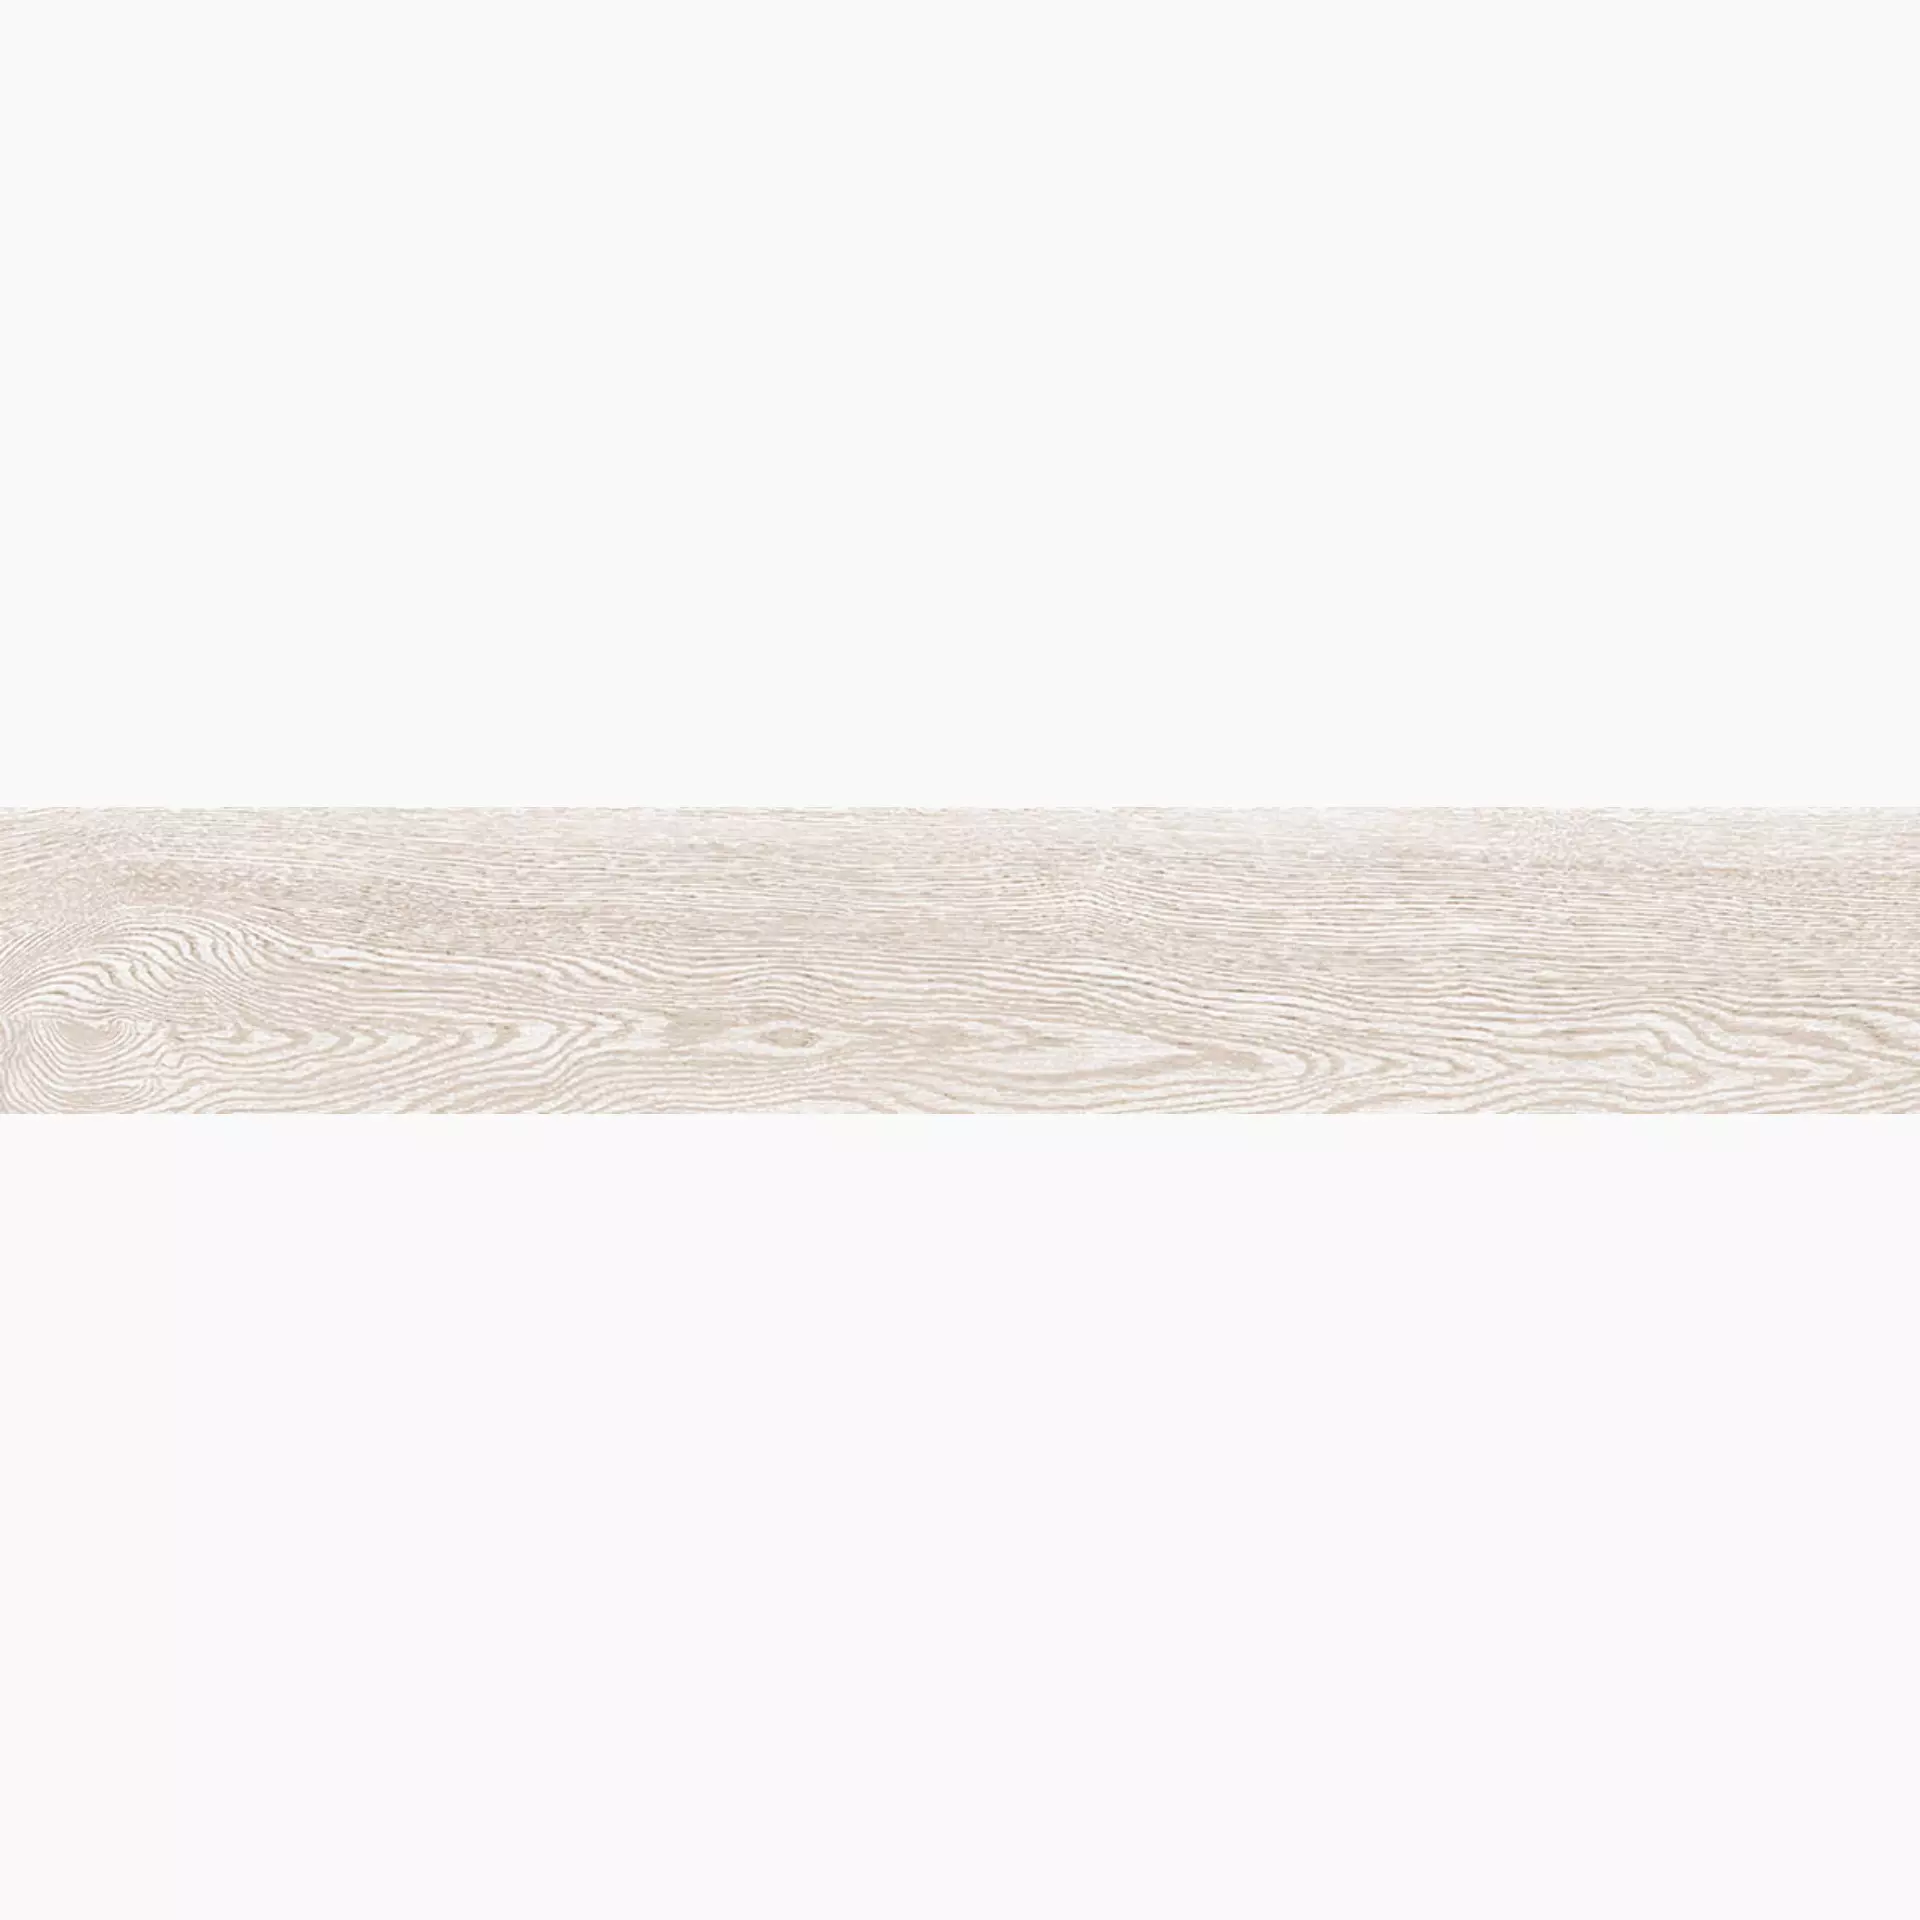 La Faenza Legno White Natural Slate Cut Matt 168057 20x120cm rectified 10mm - LEGNO 2012W RM